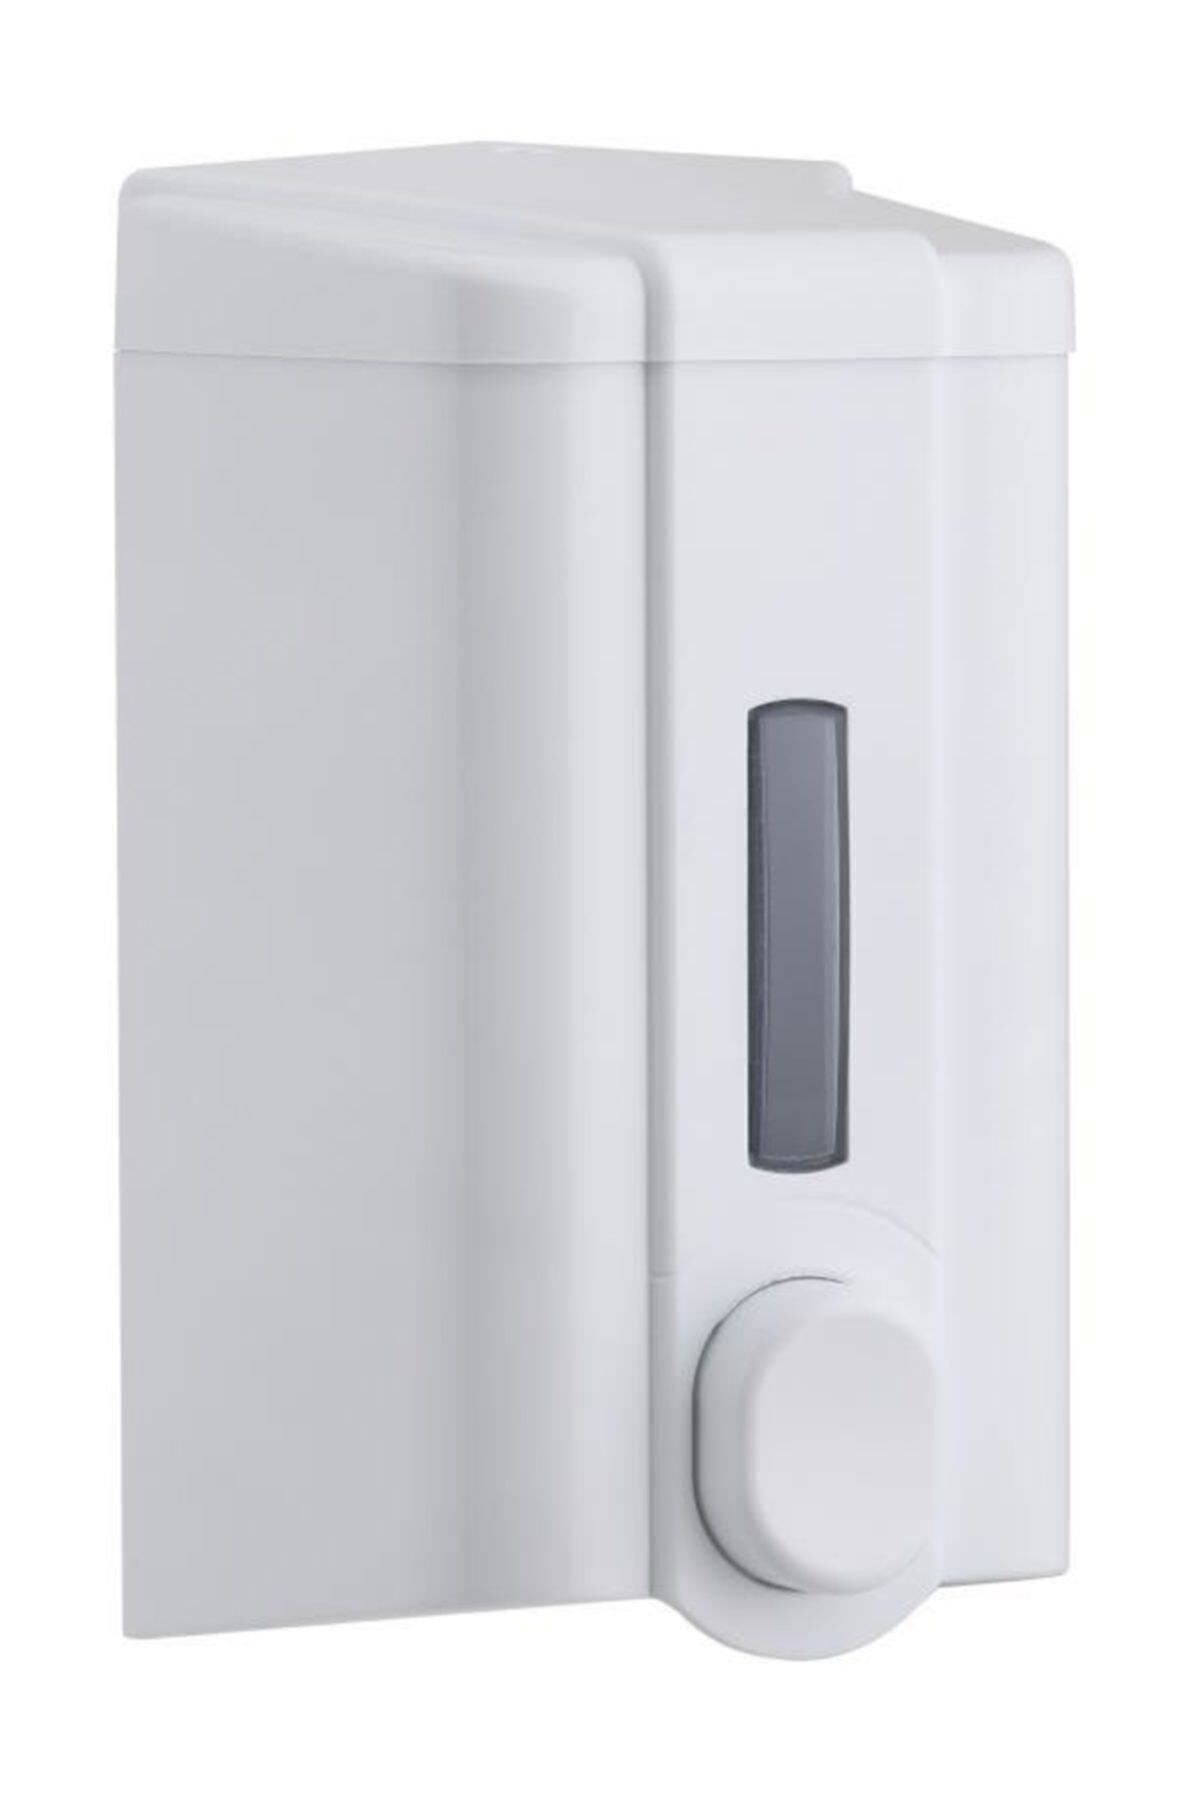 Vialli S2 Sıvı Sabun Dispenseri 500 ml (BEYAZ)